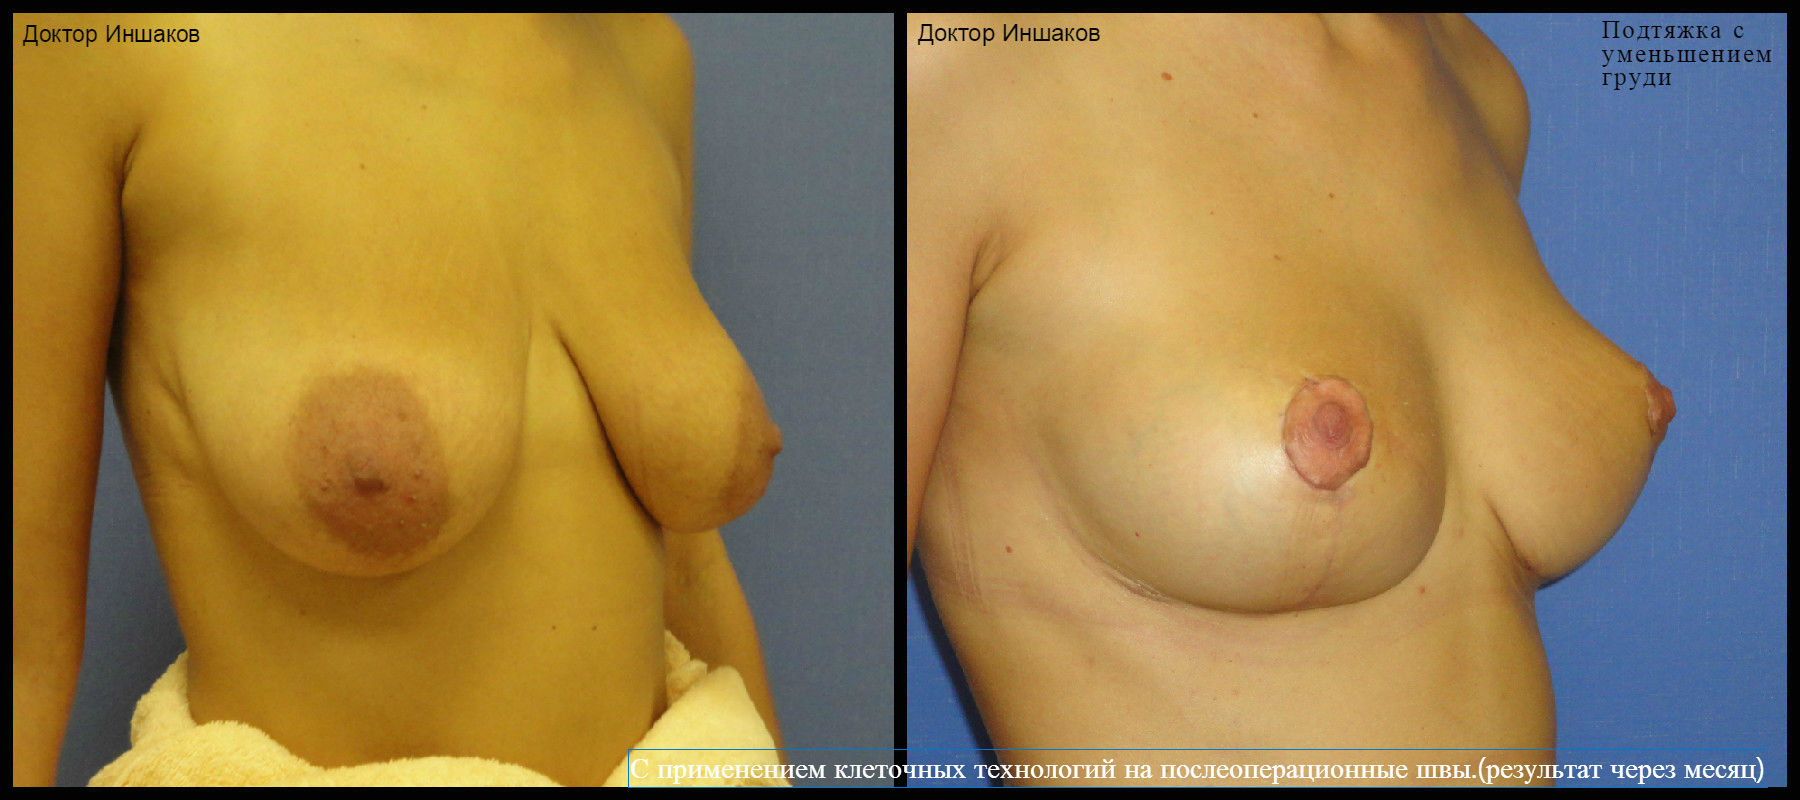 уменьшение груди у женщин фото 85